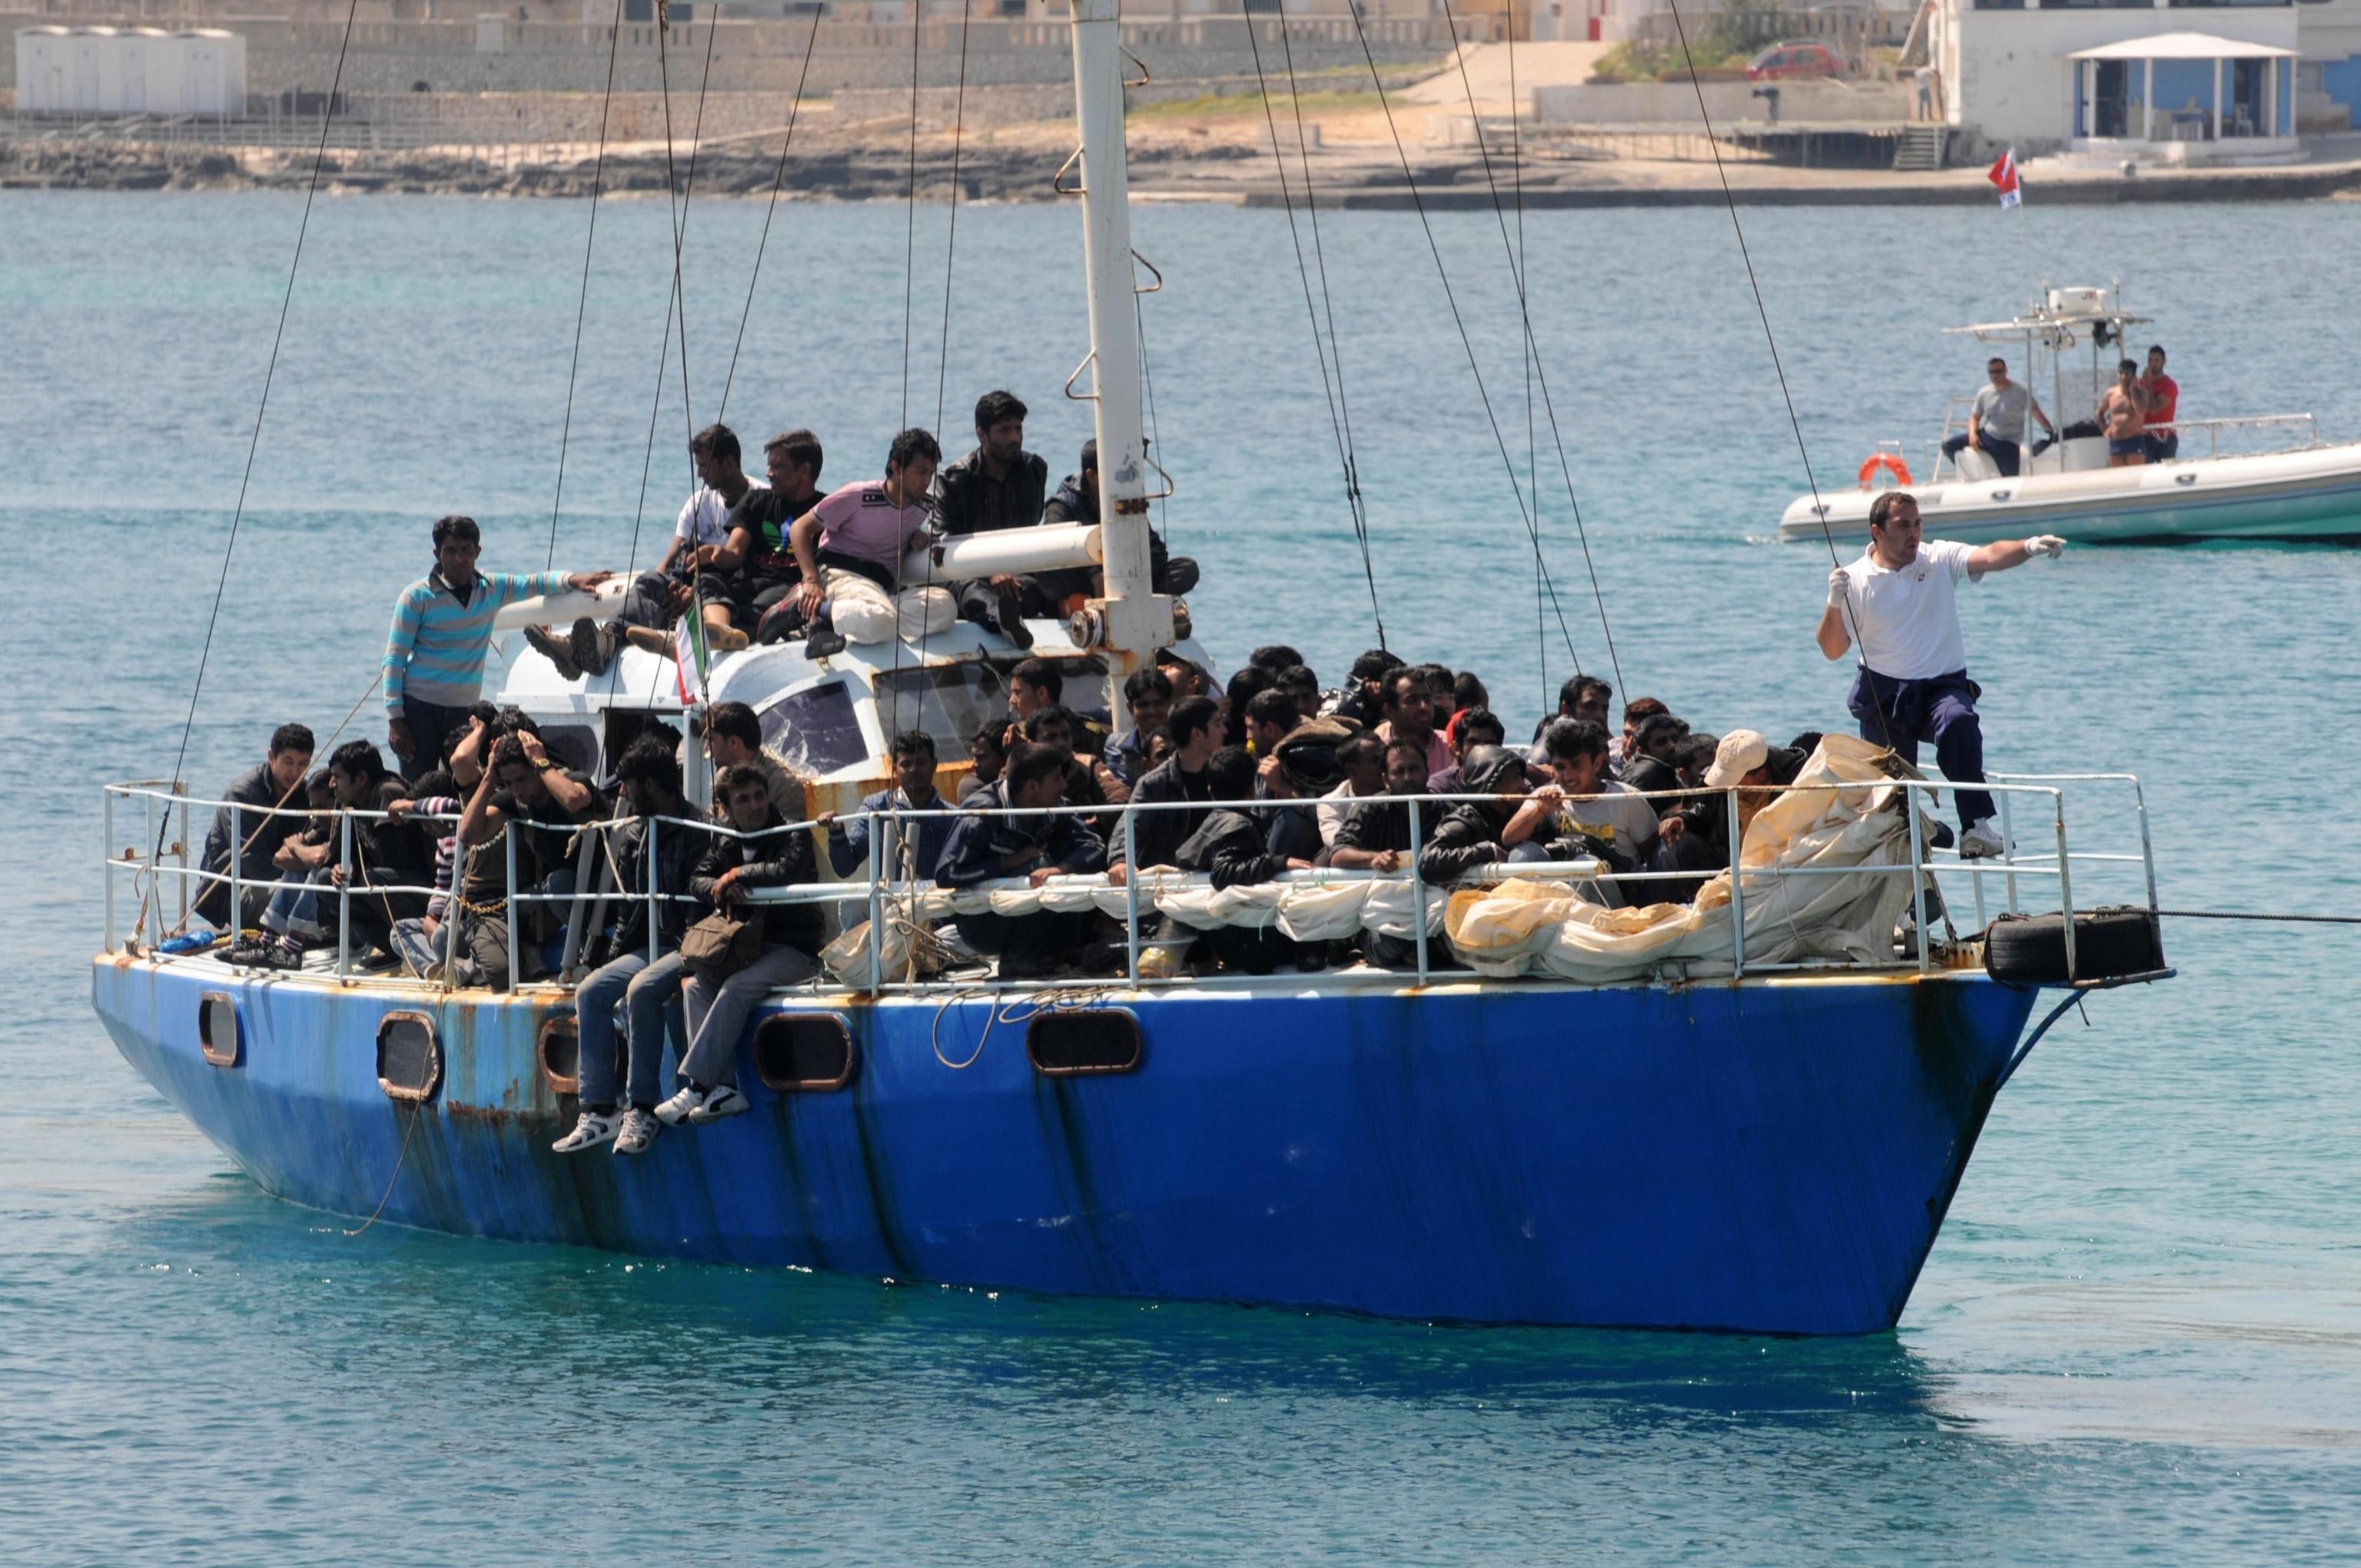 Capo Teulada. 13 migranti sbarcati in spiaggia, sono tutti uomini di nazionalità algerina